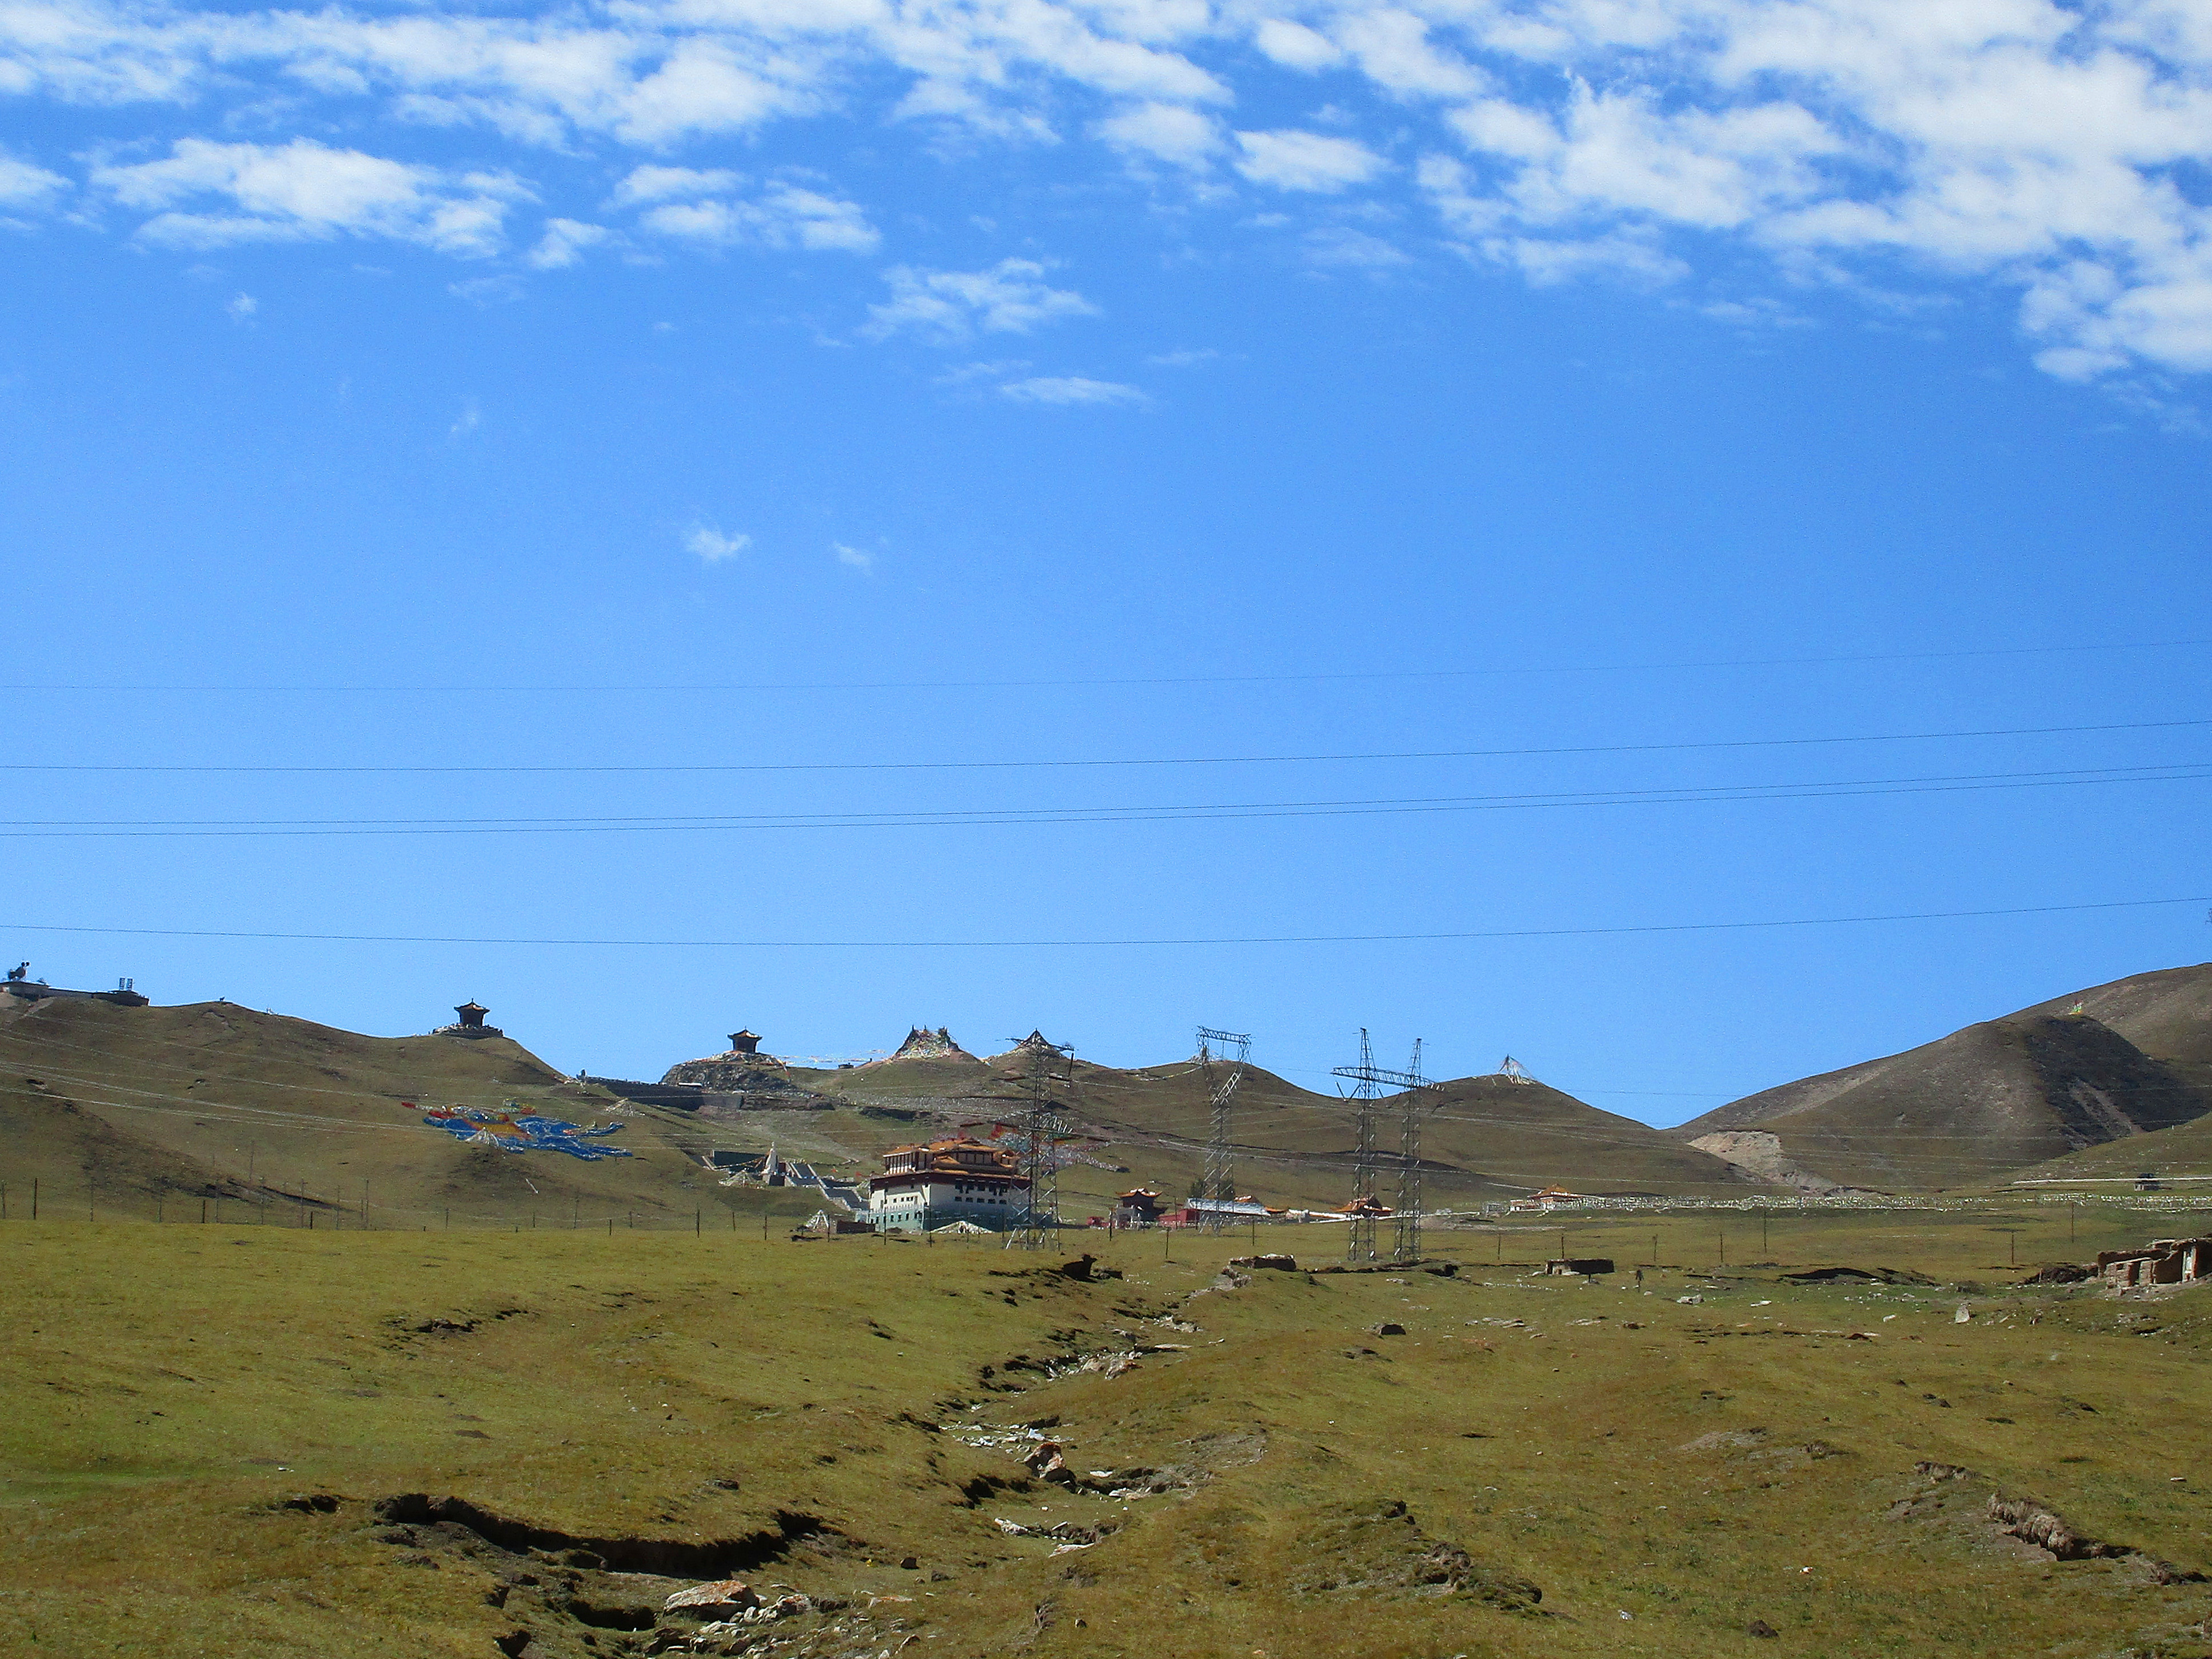 【携程攻略】湟源日月山景点,日月山，初唐时名赤岭，位于湟源县西南，海拔3520米，是游人进入青藏…